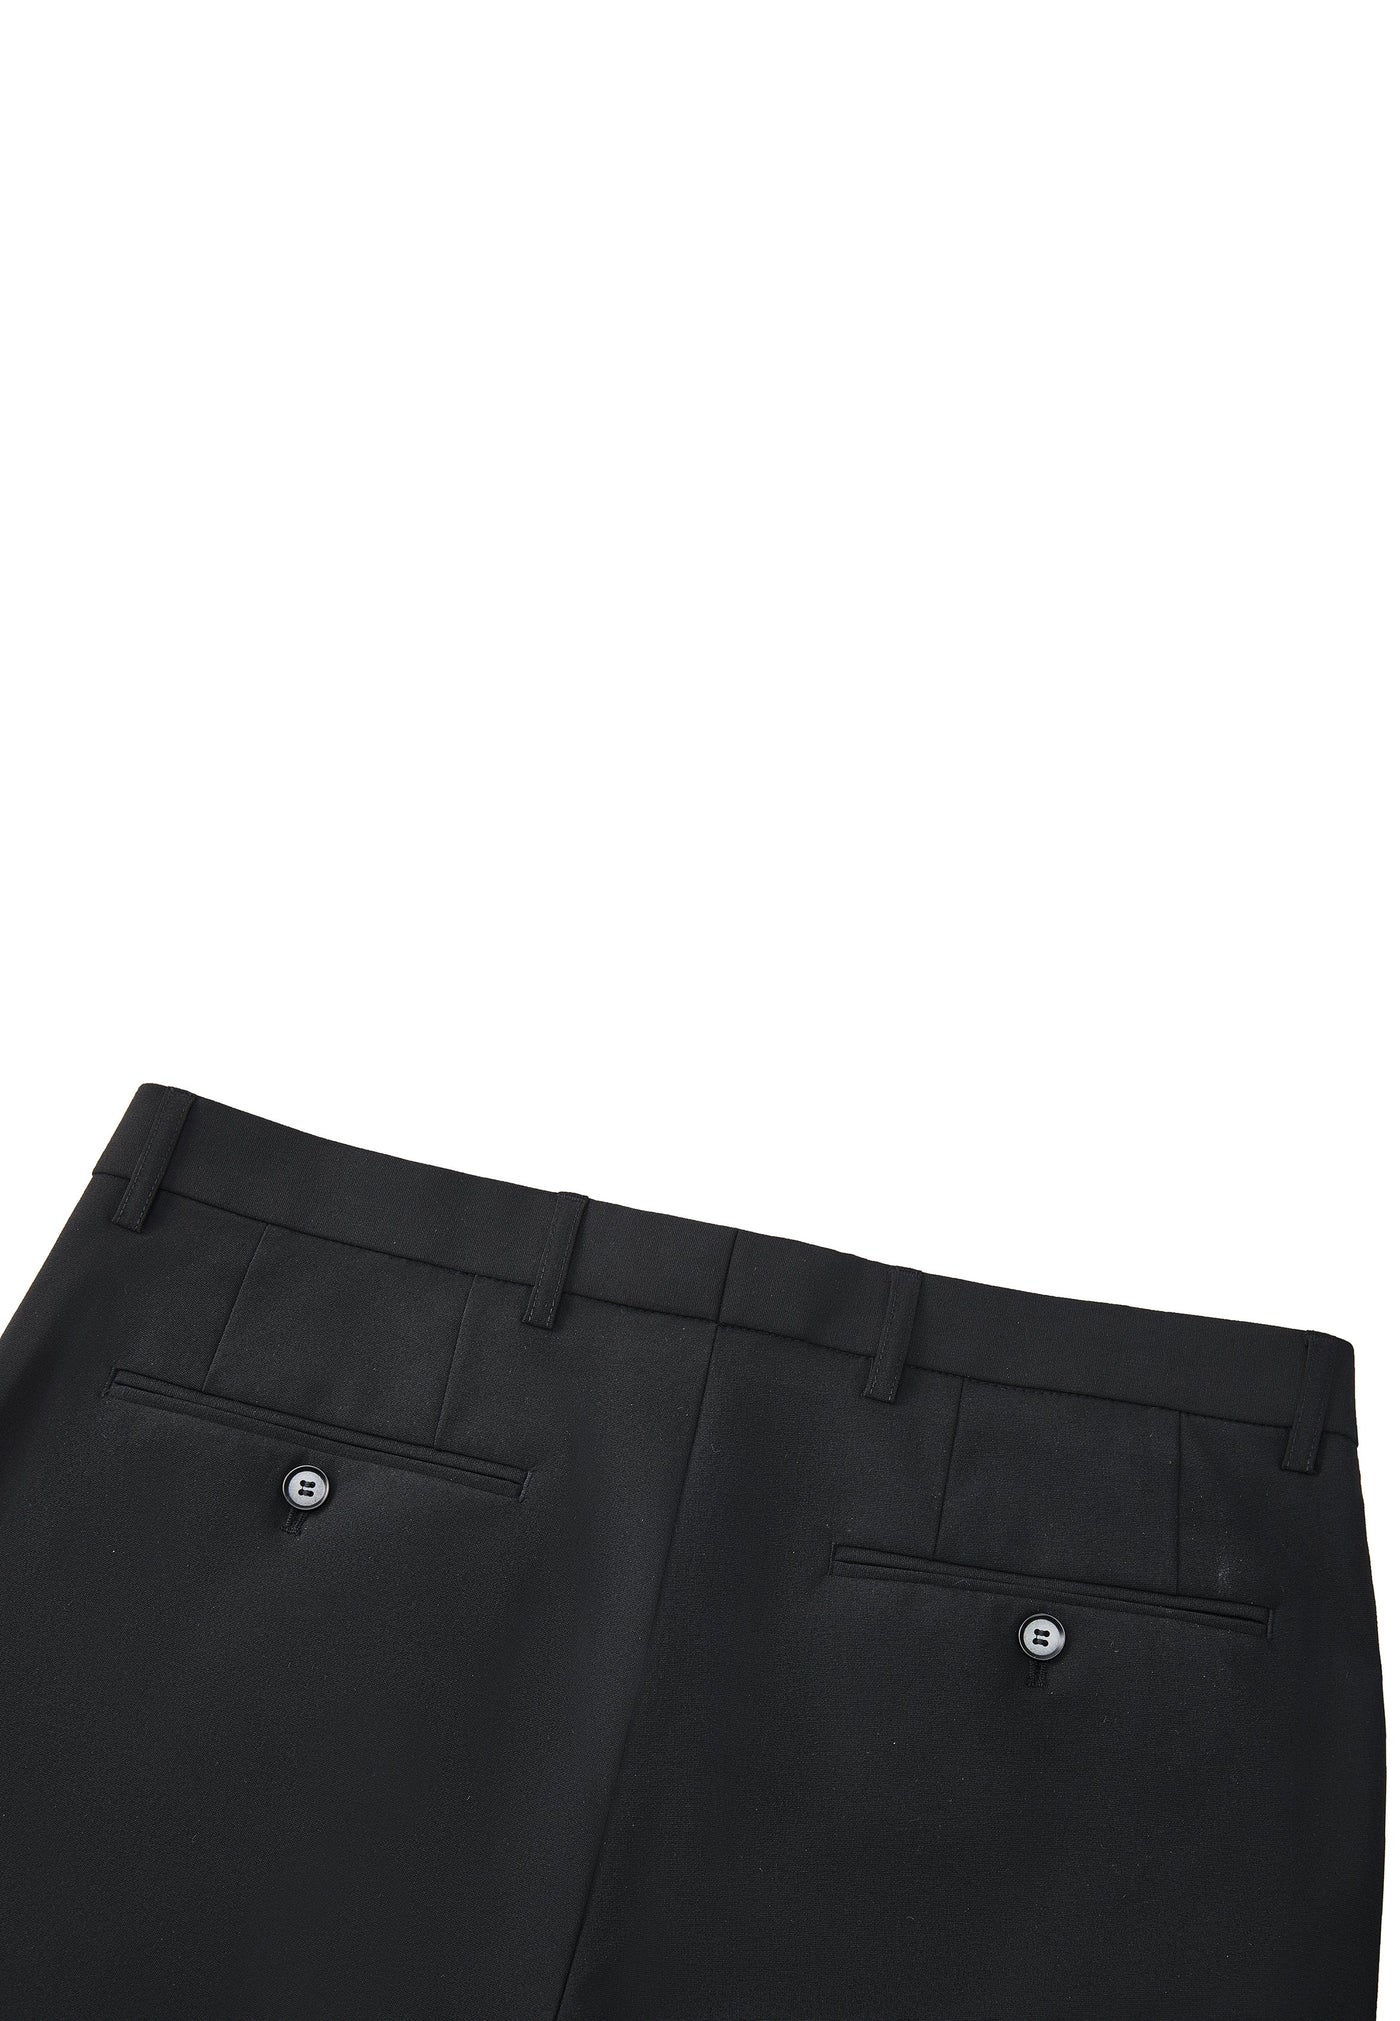 Men Clothing 3M Compact Multi-Way Stretch Suit Pants Slim Fit